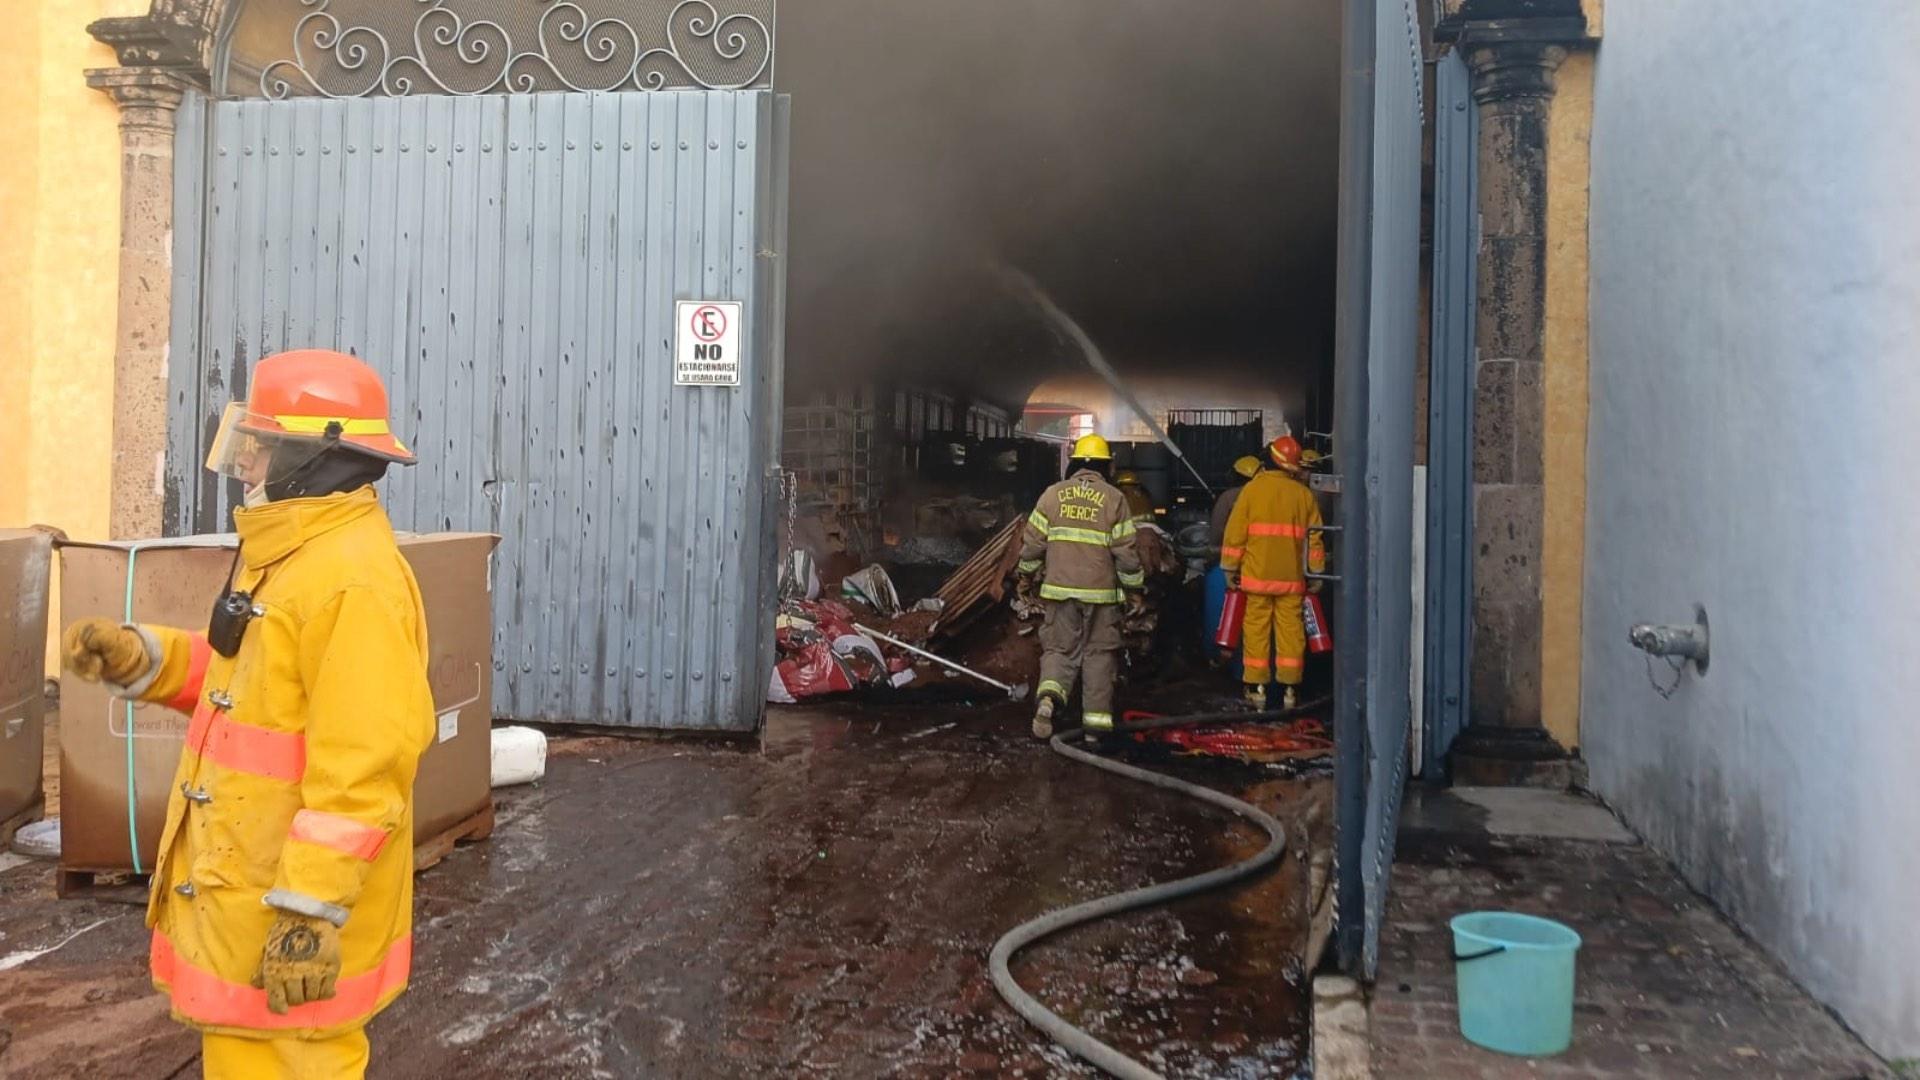 Asciende a 6 el número de personas fallecidas tras la explosión registrada en una empresa tequilera en Tequila, Jalisco